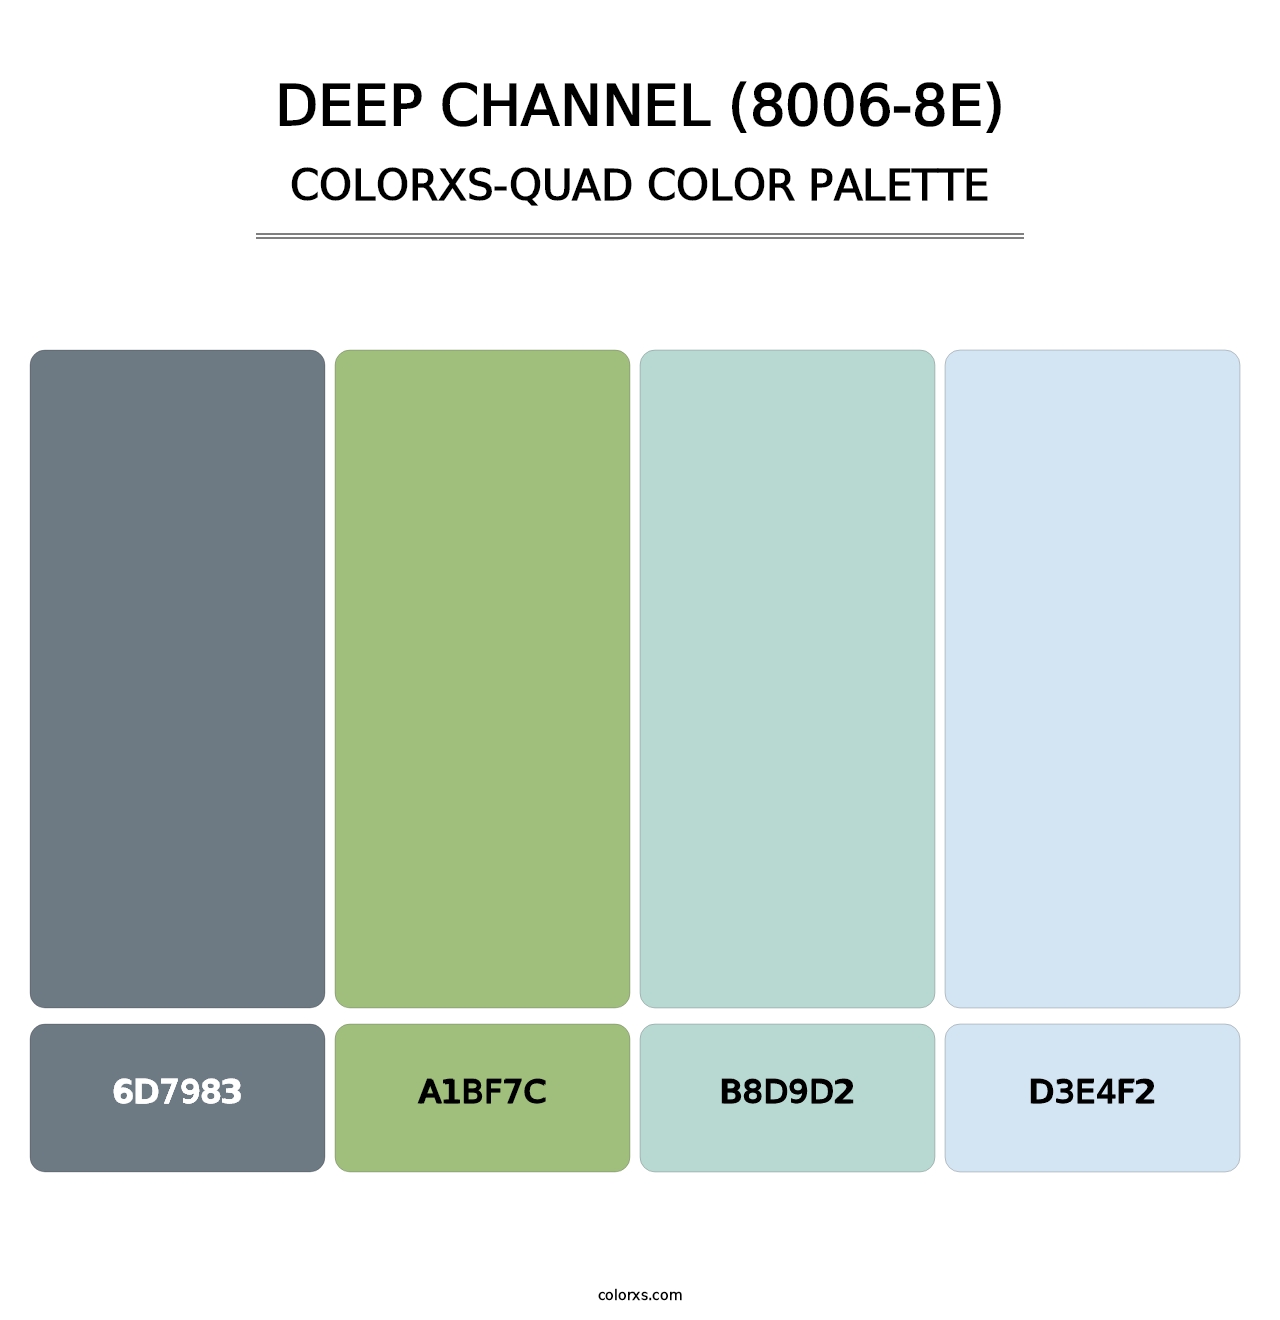 Deep Channel (8006-8E) - Colorxs Quad Palette